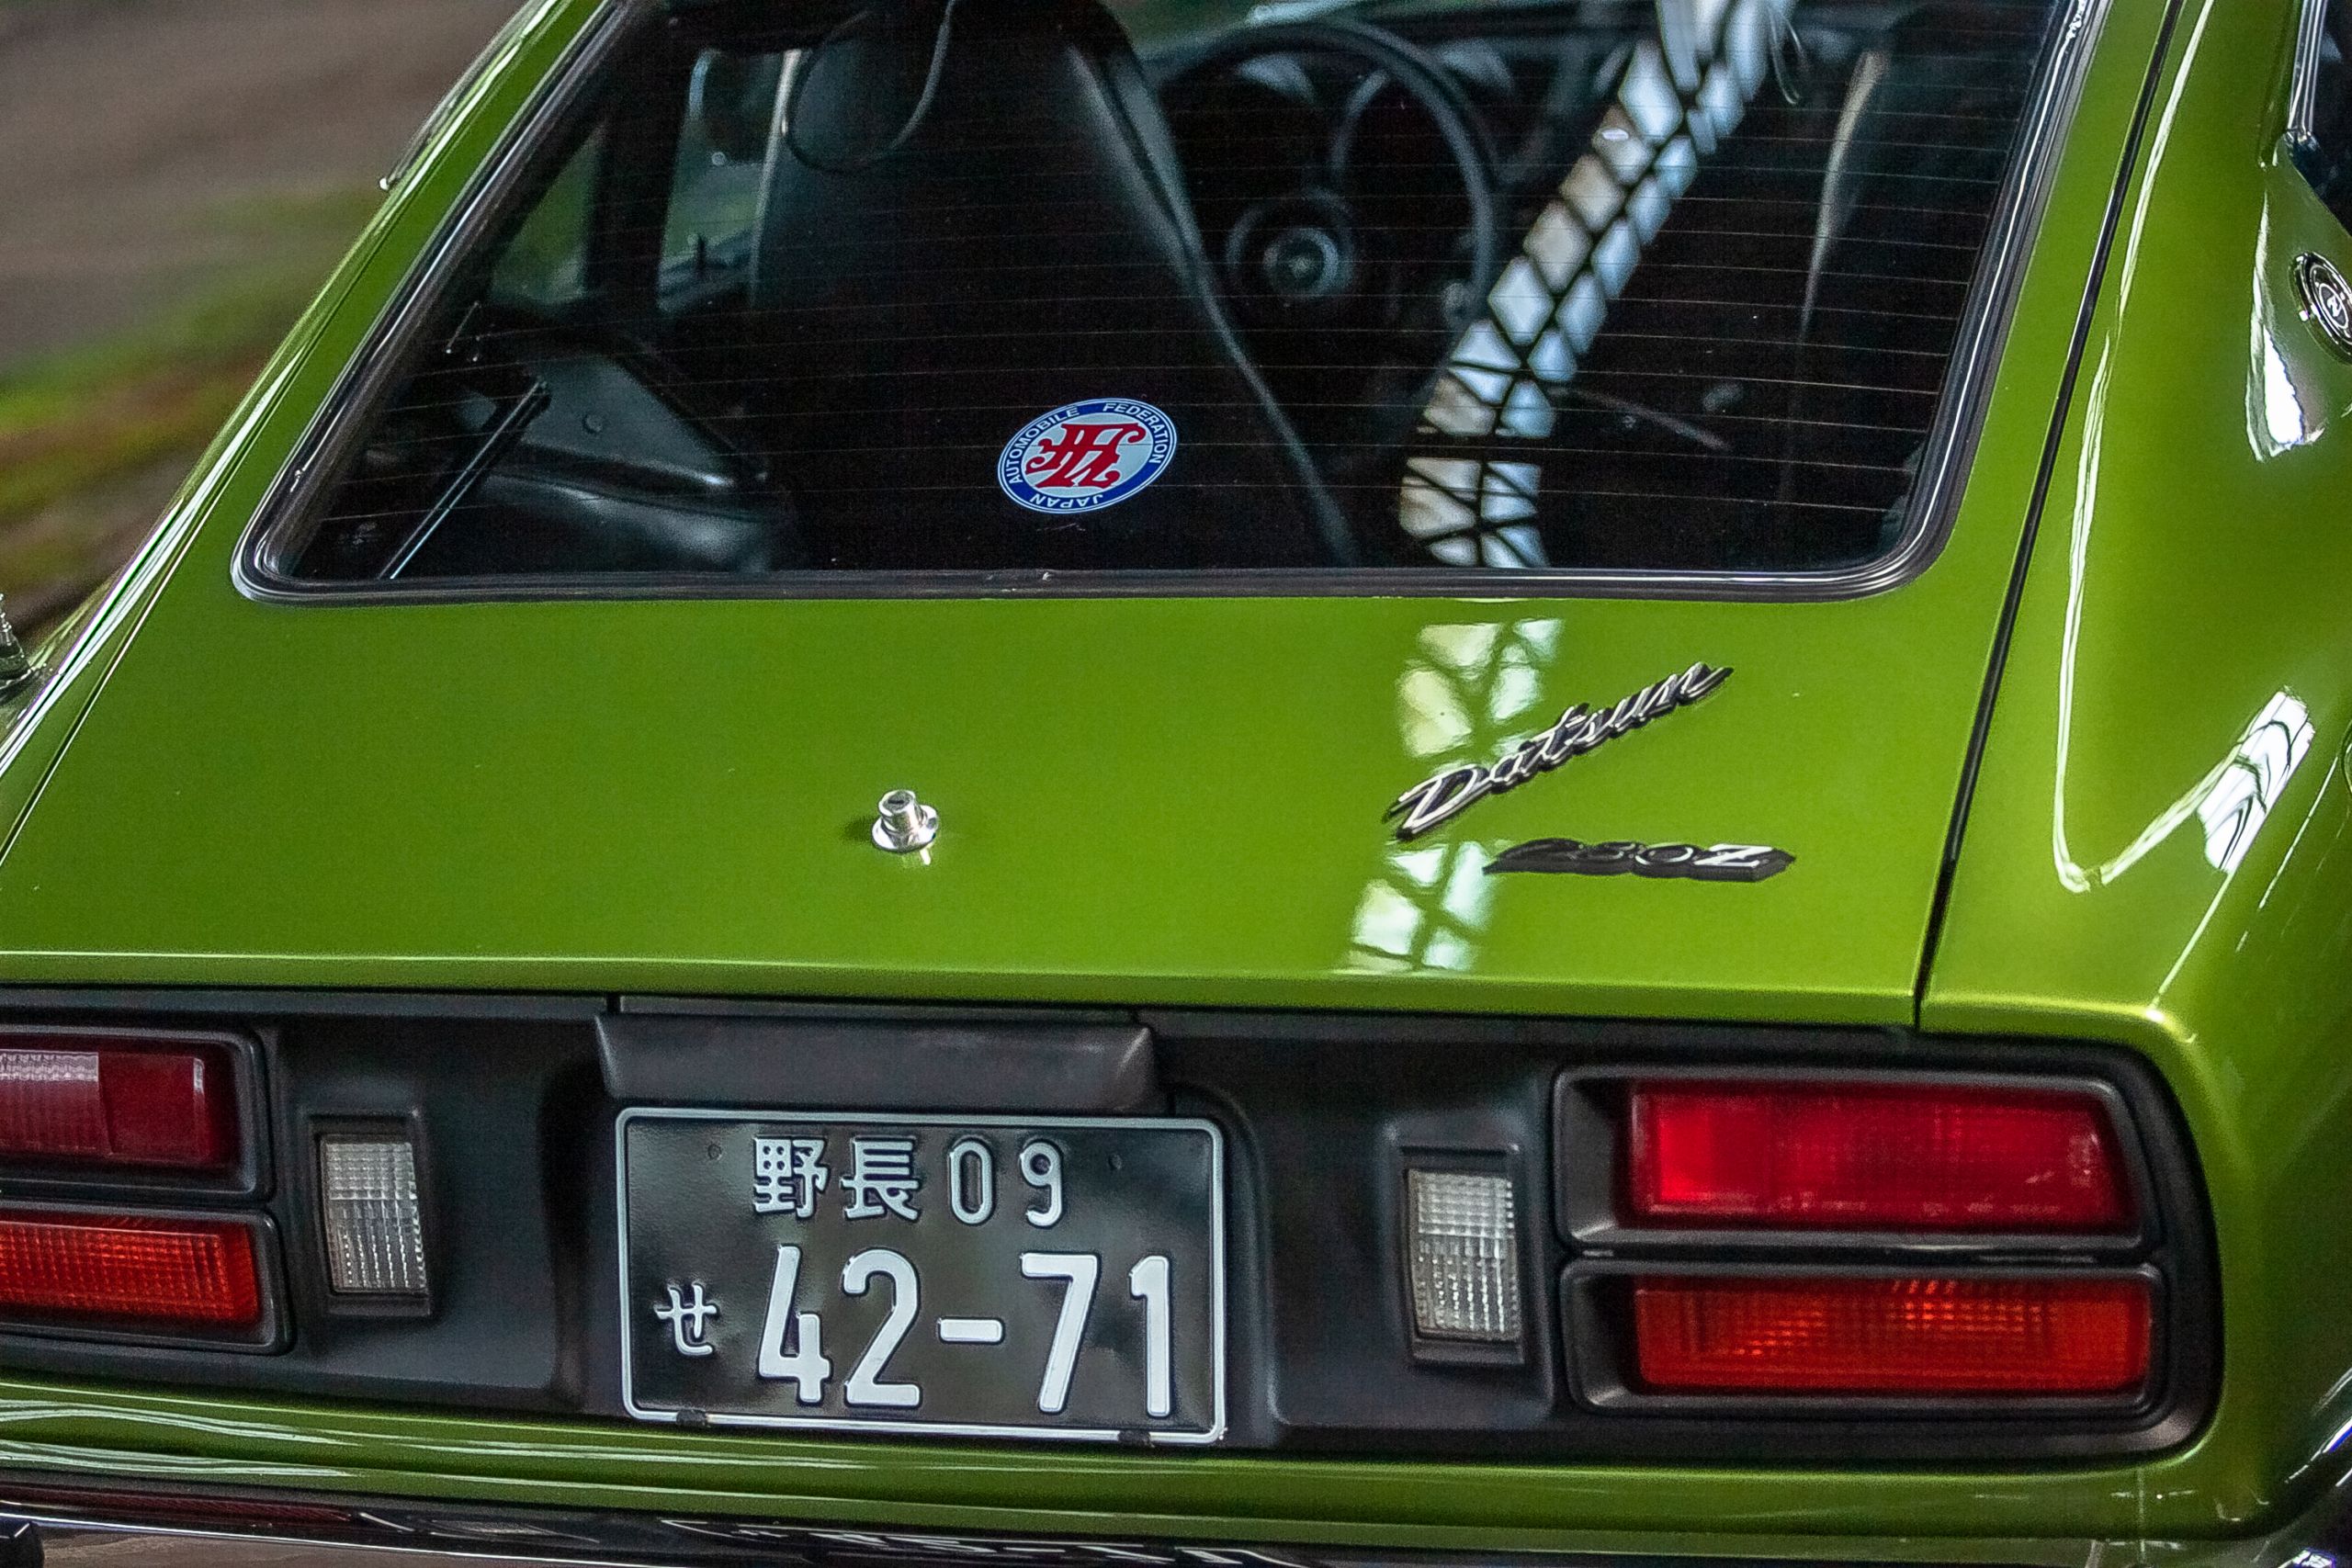 Fully restored 1976 DATSUN 280Z AVOCADO GREEN for sale - rear hatch